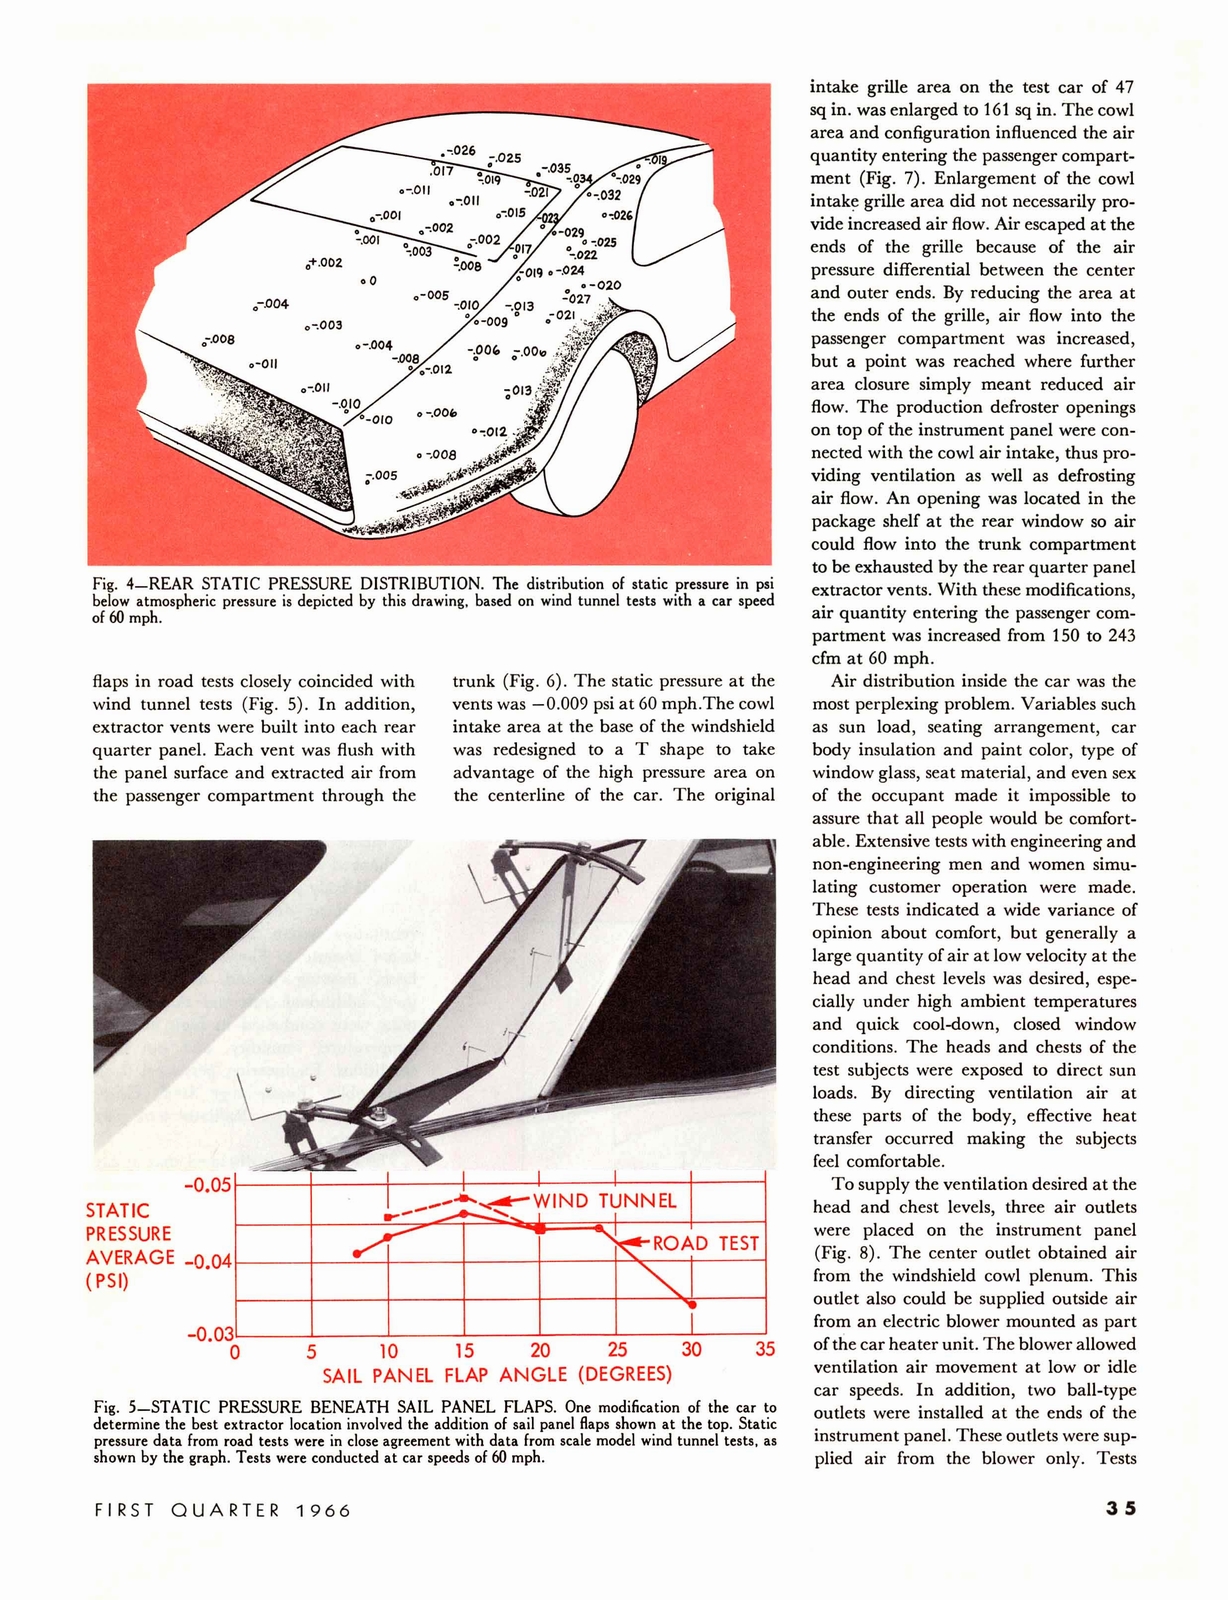 n_1966 GM Eng Journal Qtr1-35.jpg